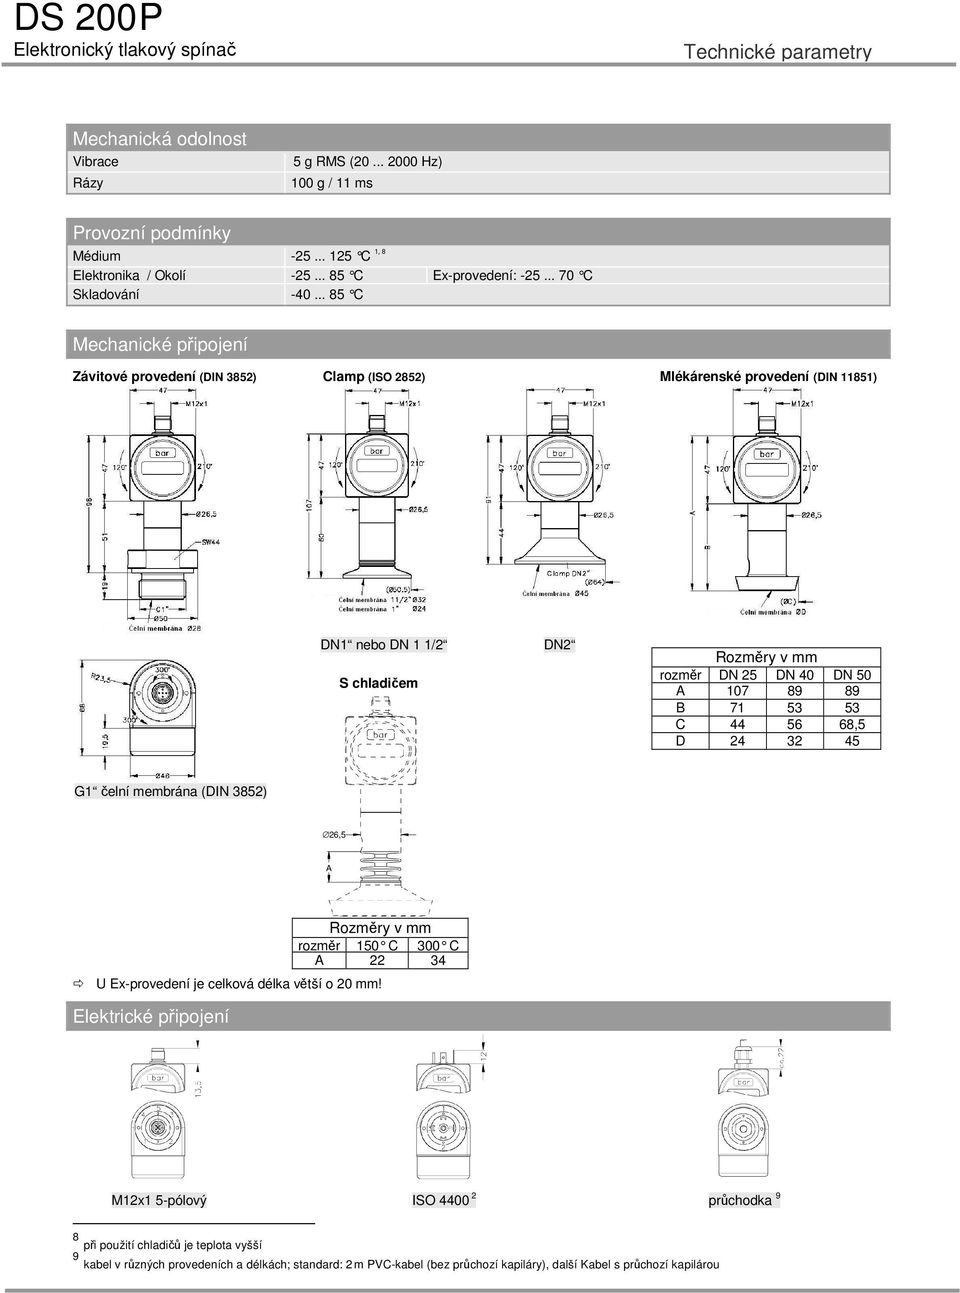 .. 8 C Mechanické připojení Závitové provedení (DIN 8) Clamp (ISO 8) Mlékárenské provedení (DIN 8) DN nebo DN / S chladičem DN Rozměry v mm rozměr DN DN 0 DN 0 A 07 89 89 B